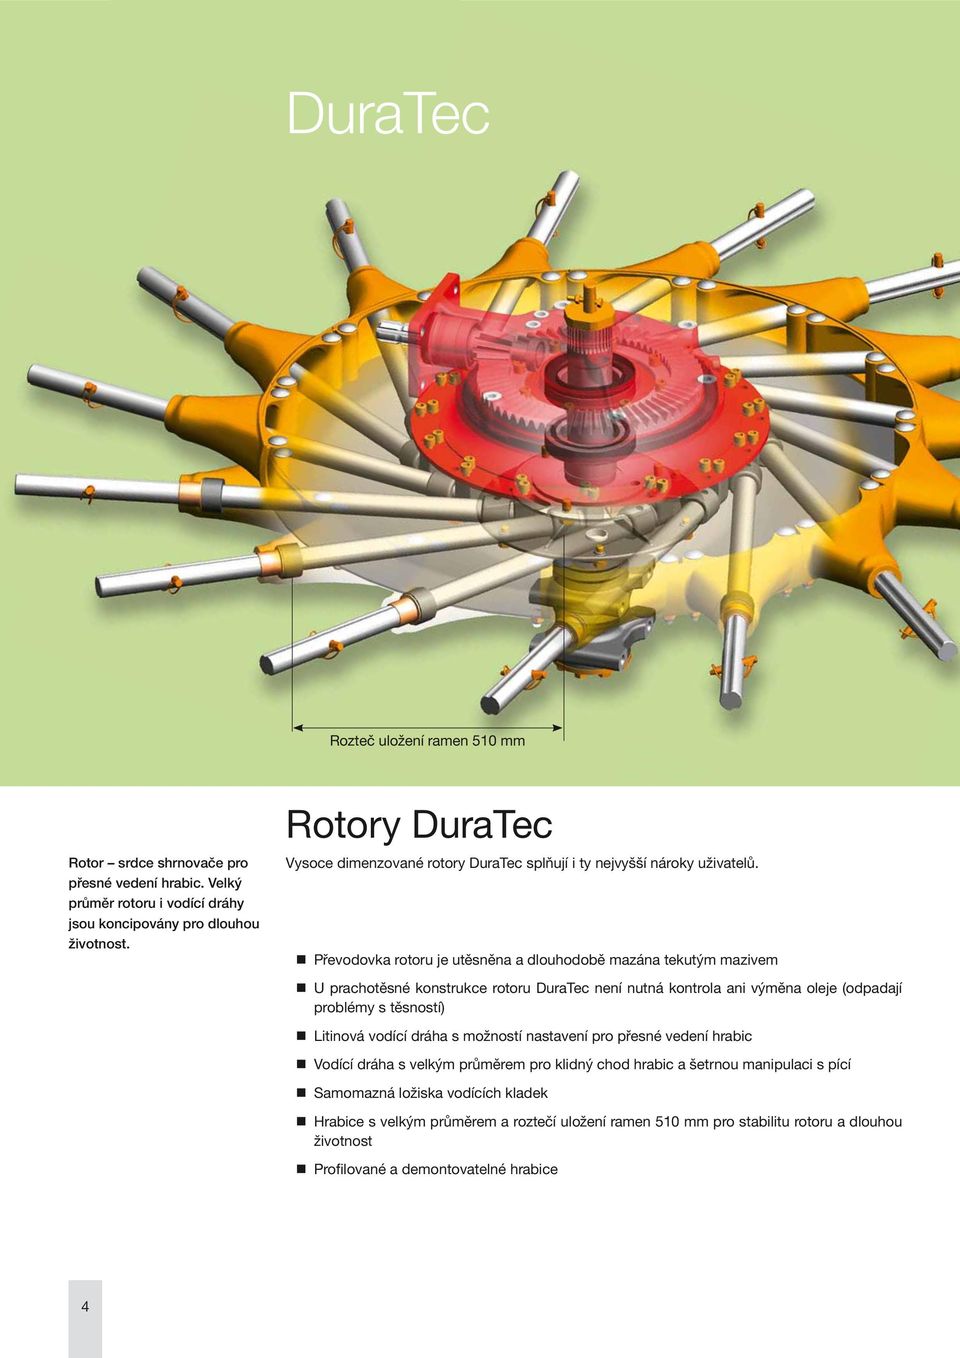 Převodovka rotoru je utěsněna a dlouhodobě mazána tekutým mazivem U prachotěsné konstrukce rotoru DuraTec není nutná kontrola ani výměna oleje (odpadají problémy s těsností) Litinová